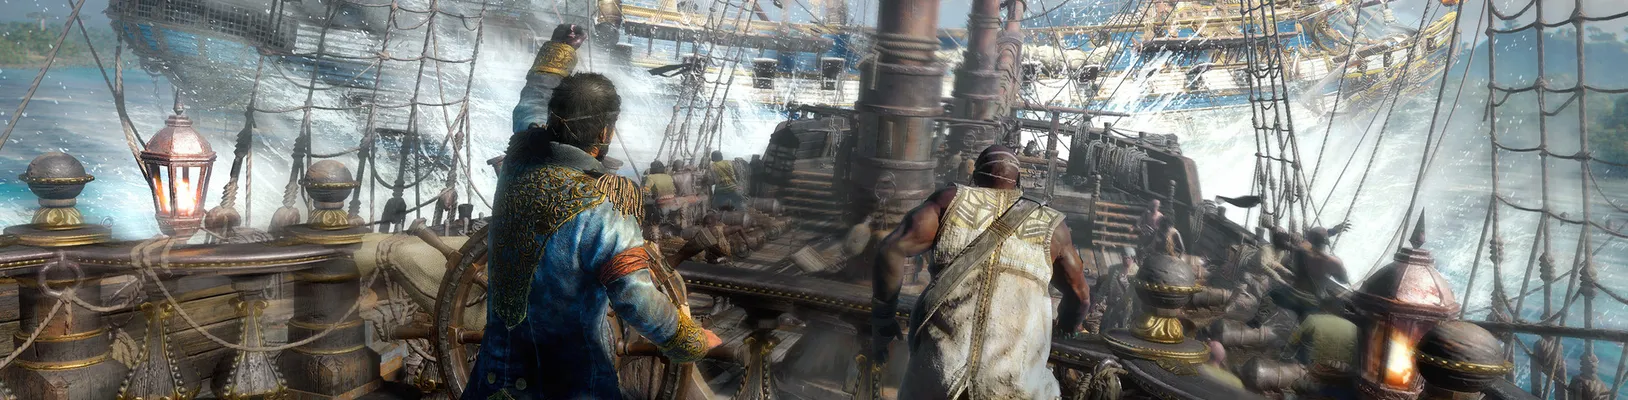 Pirátské Skull and Bones bude herní službou se zaměřením na spolupráci hráčů